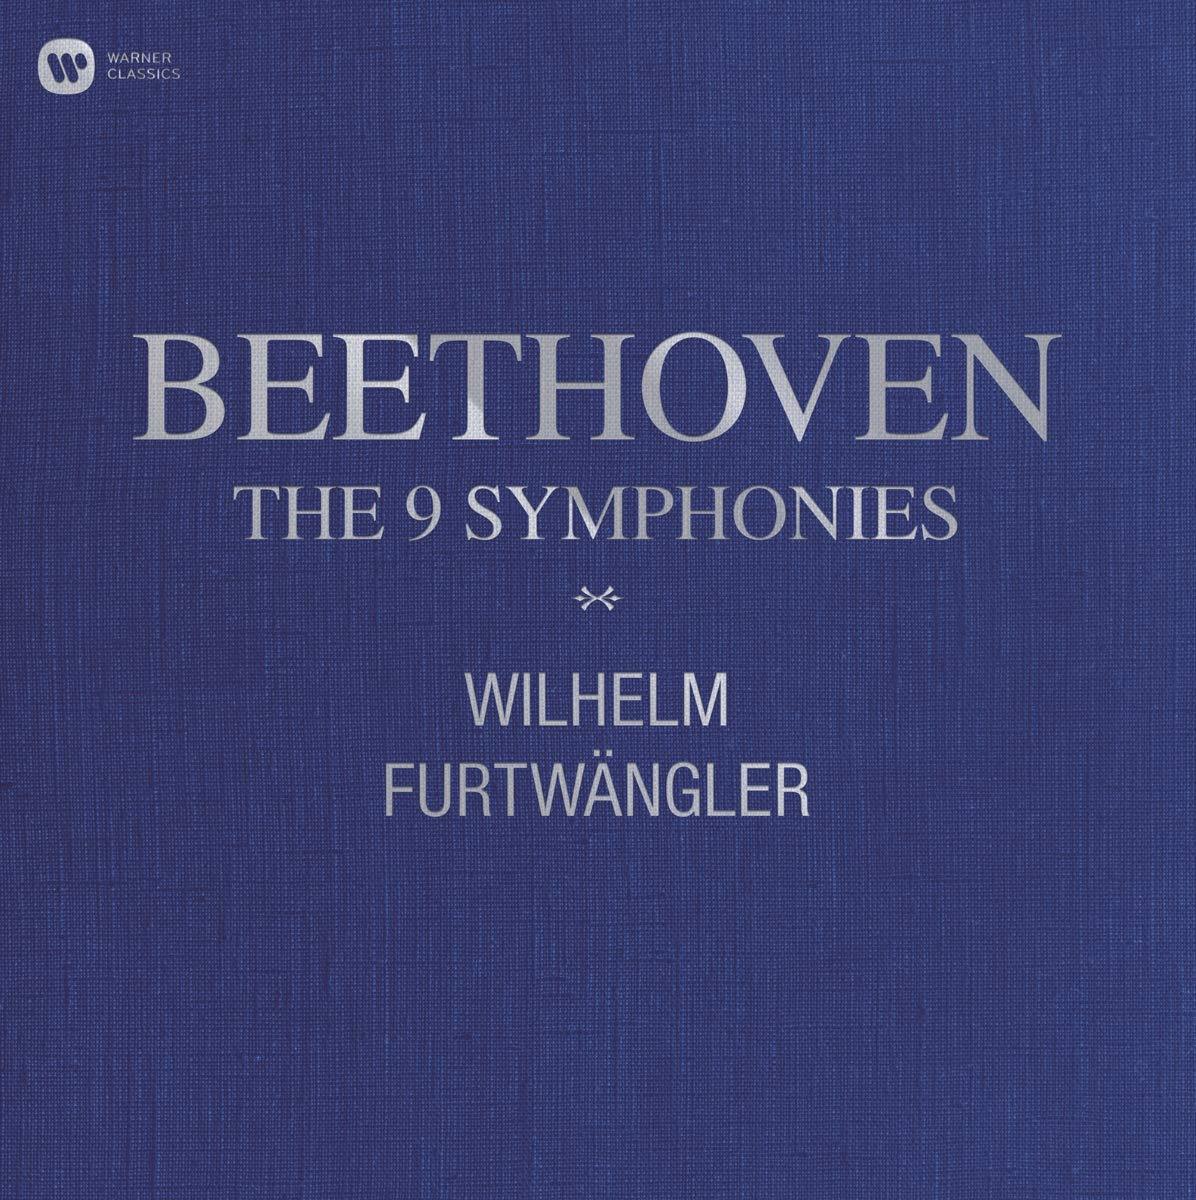 Beethoven: 9 Symphonies - Wilhelm Furtwangler (VINYL, 10 LPS)